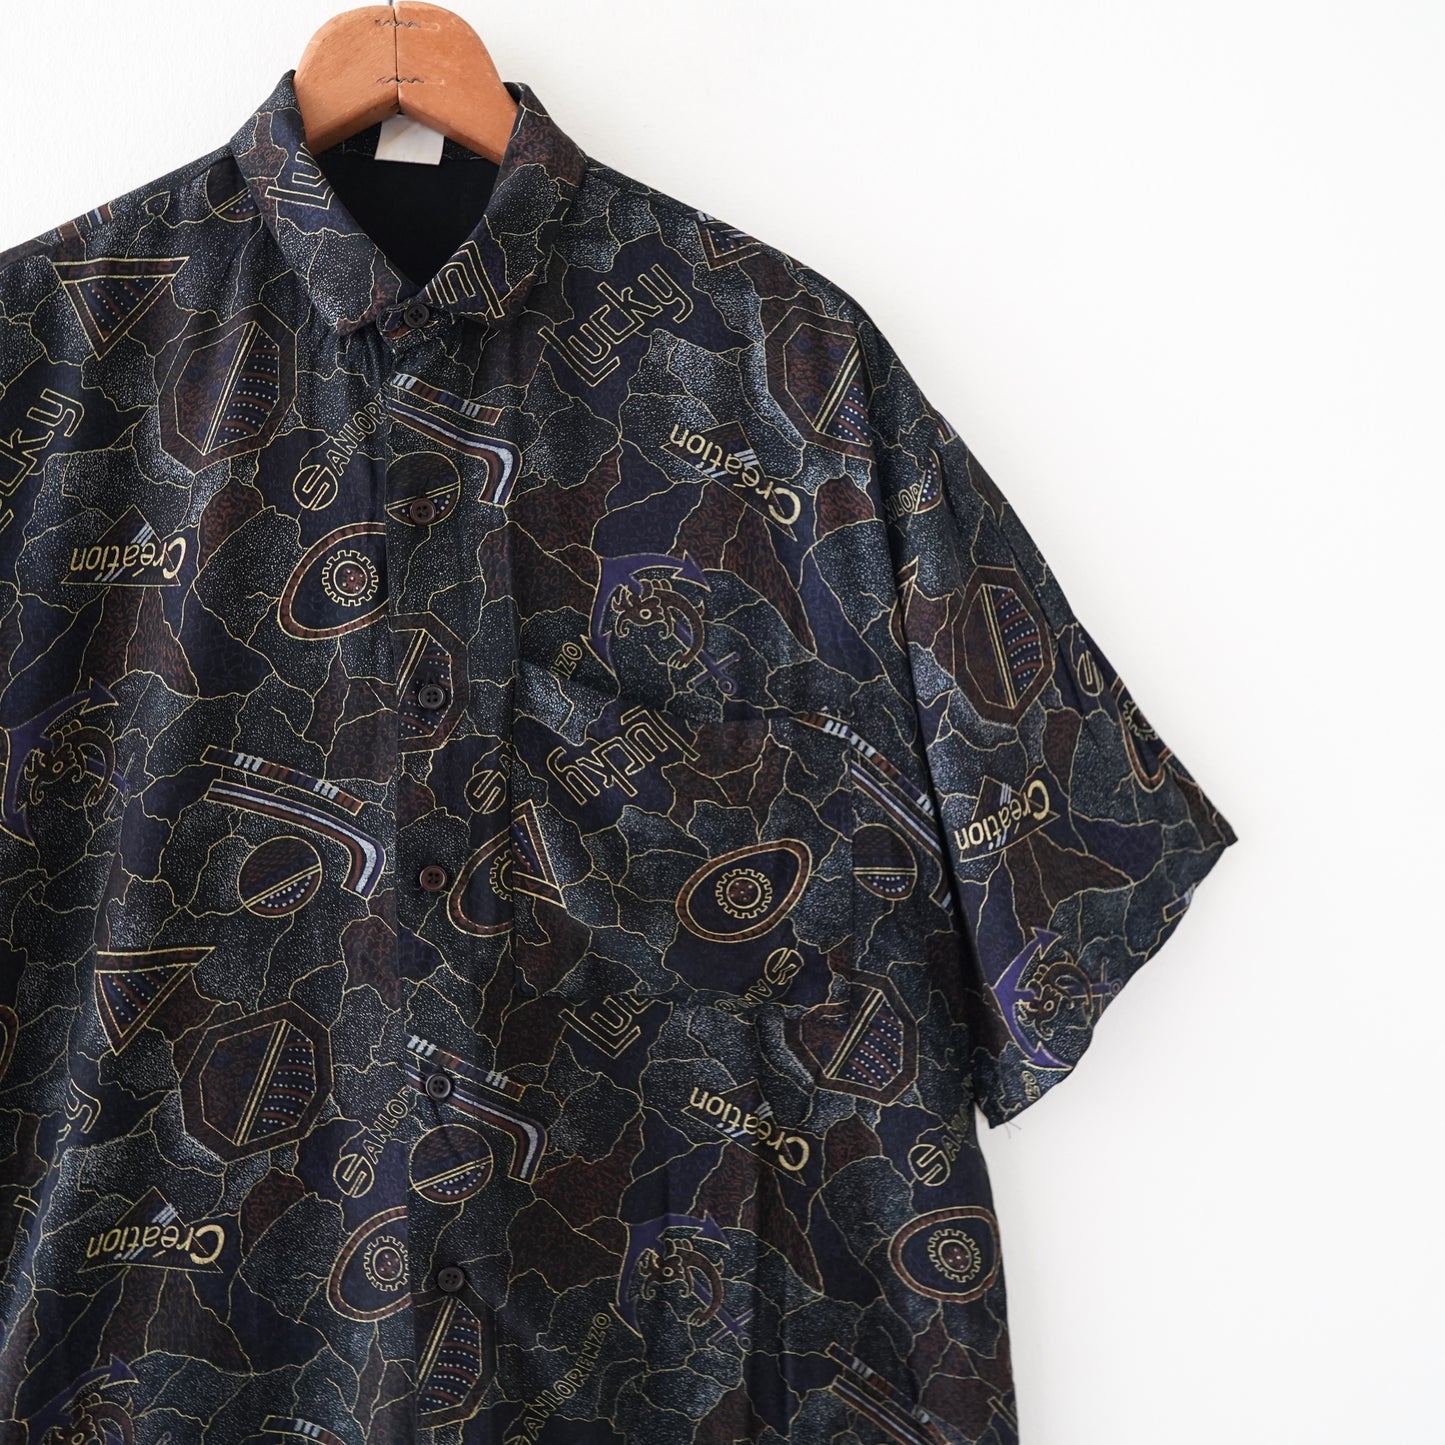 single stitch pattern shirt